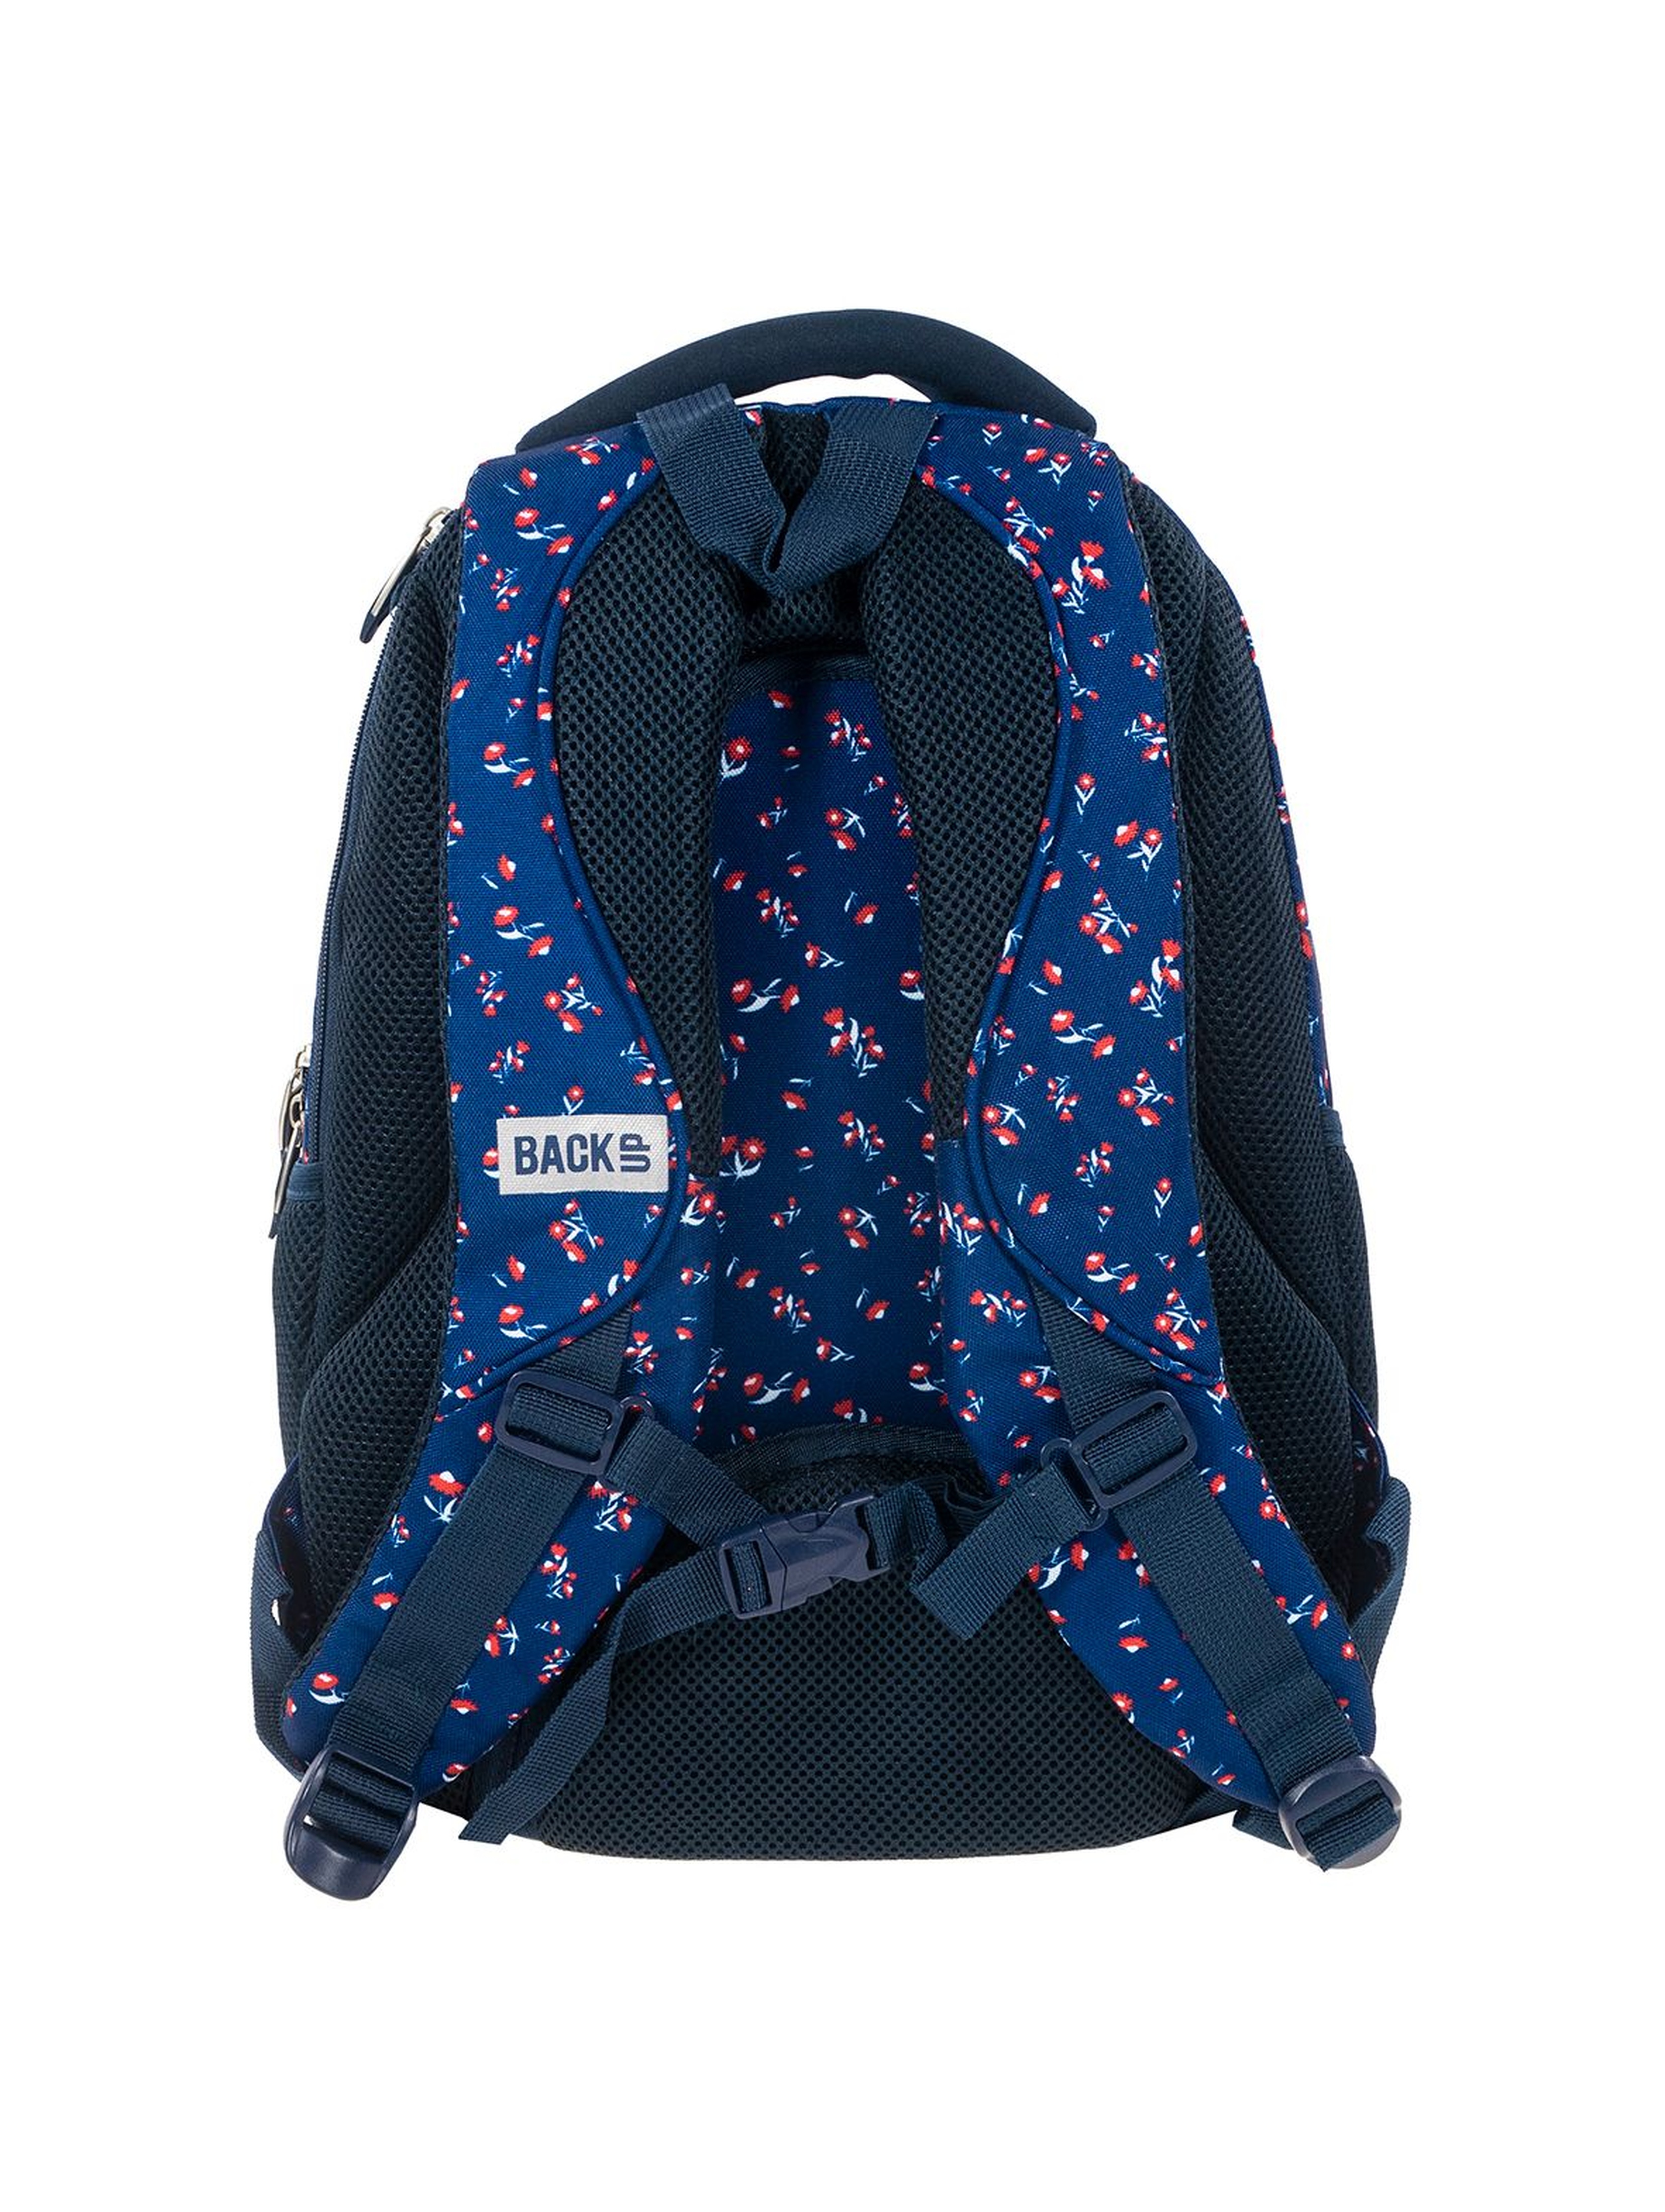 Plecak szkolny dla dziewczynki BackUP+SŁUCHAWKI - niebieski